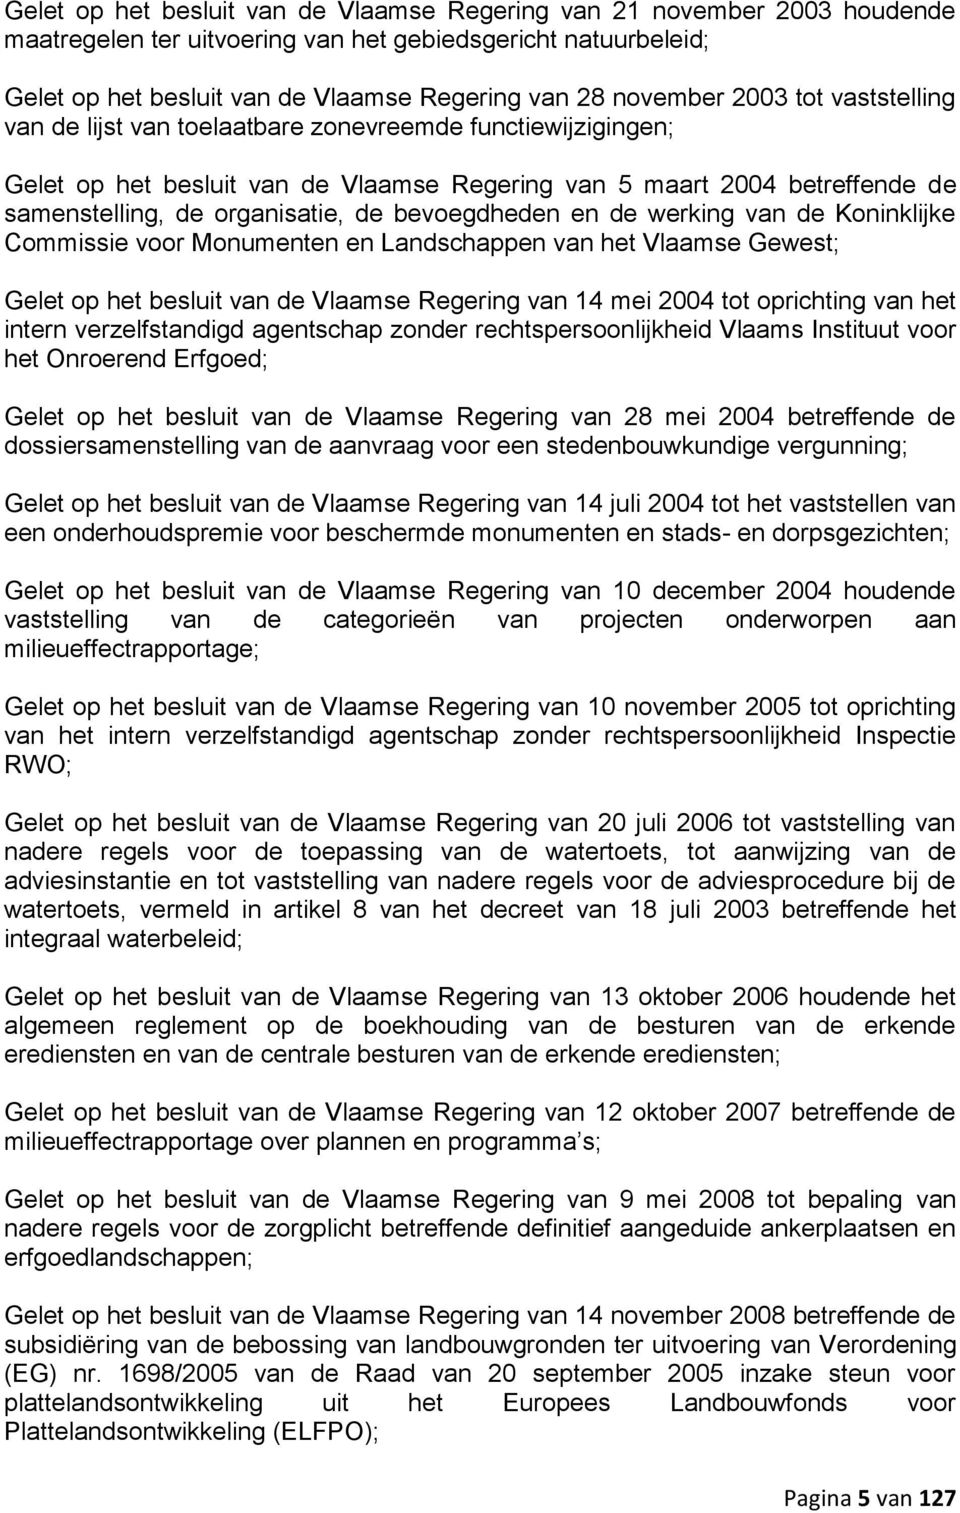 bevoegdheden en de werking van de Koninklijke Commissie voor Monumenten en Landschappen van het Vlaamse Gewest; Gelet op het besluit van de Vlaamse Regering van 14 mei 2004 tot oprichting van het